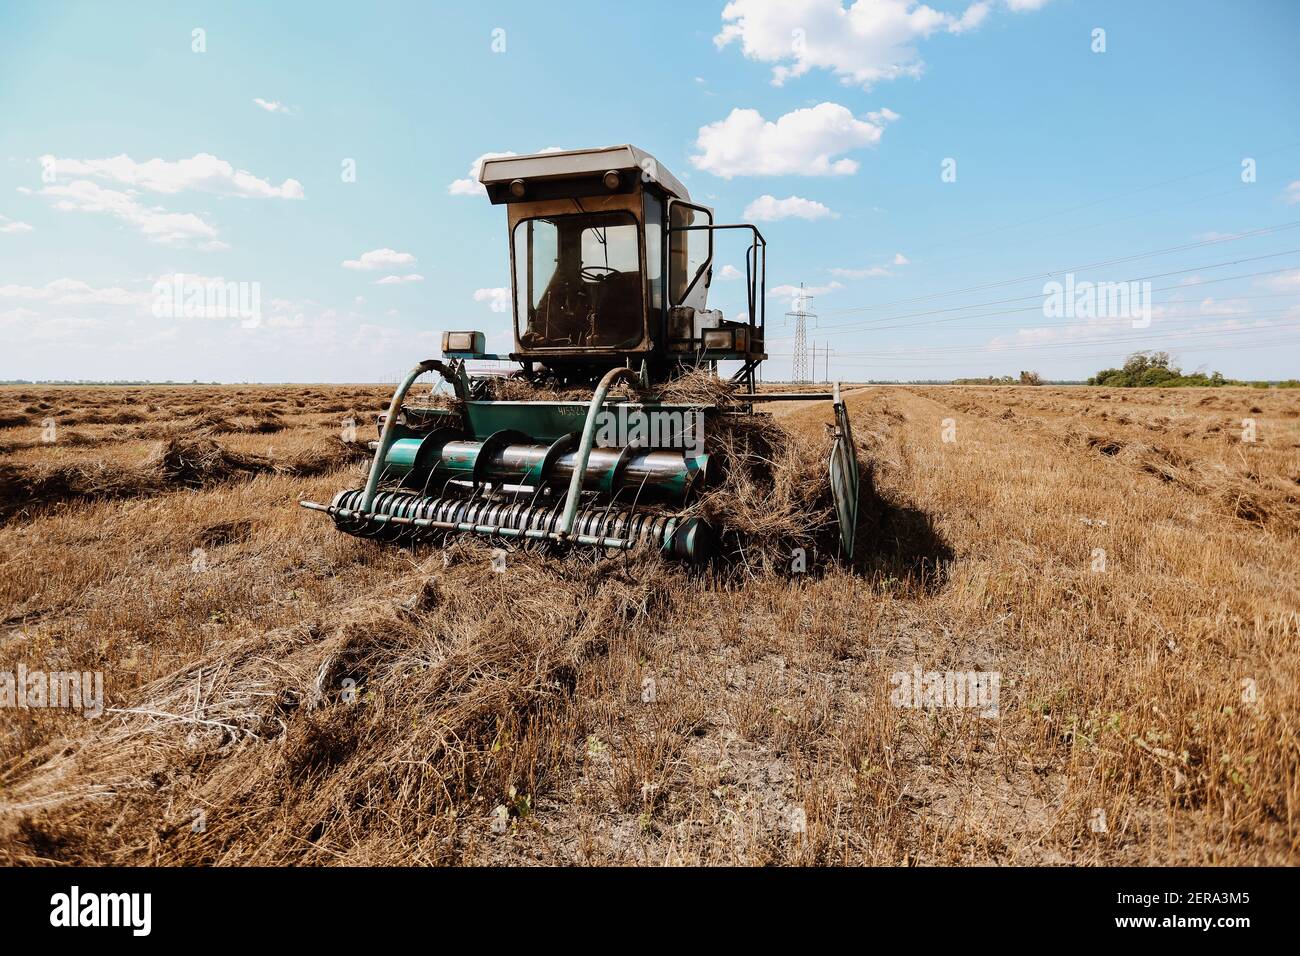 Phông nền đồng quê cánh đồng lúa mì với máy gặt cũ sẽ đưa bạn đến với không gian yên bình và thanh bình của miền quê. Với hình ảnh những cánh đồng rộng lớn tuyệt đẹp, phông nền đồng quê sẽ làm tăng sự chân thật và tự nhiên của tác phẩm của bạn.